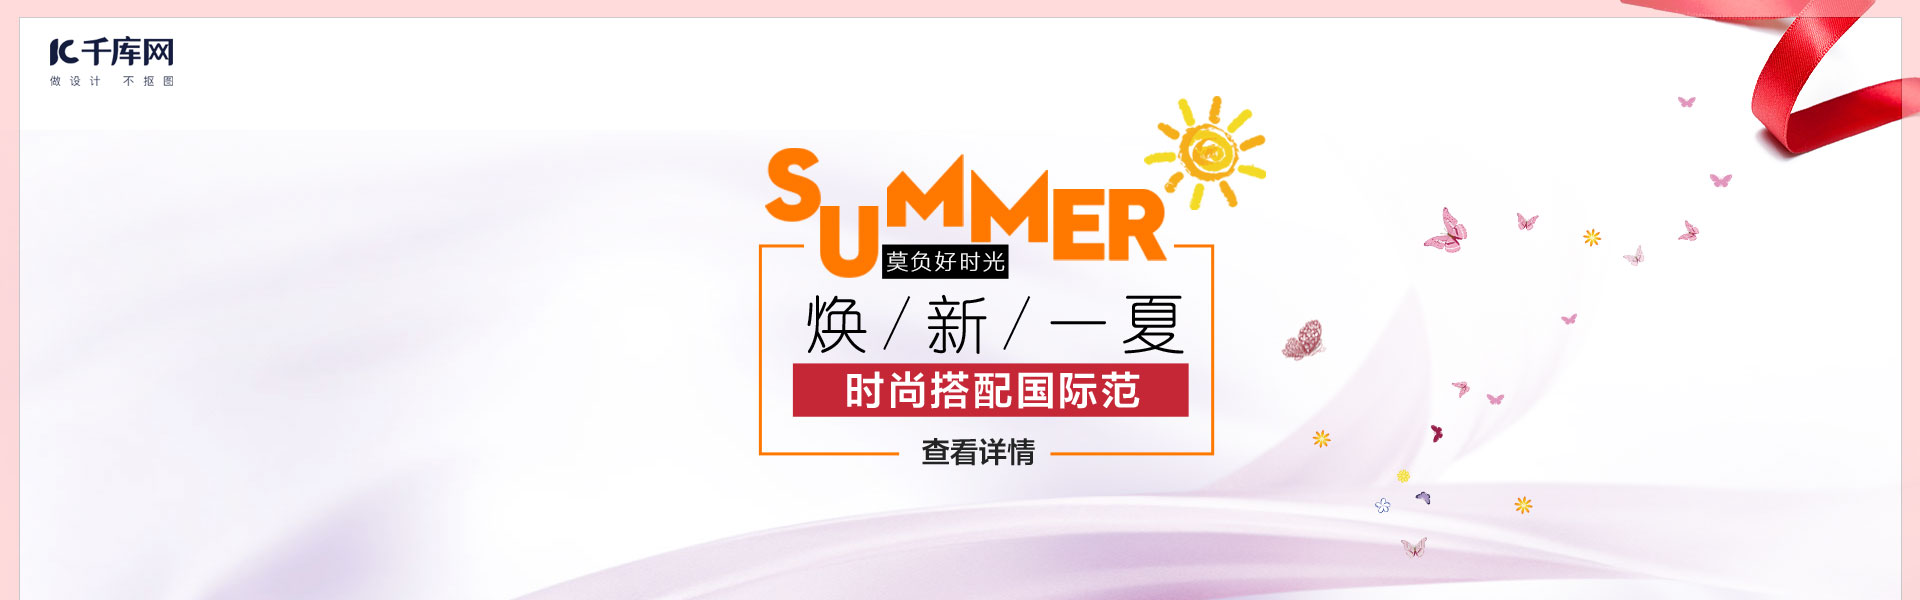 电商淘宝夏季钟表促销模板PSD海报banner图片